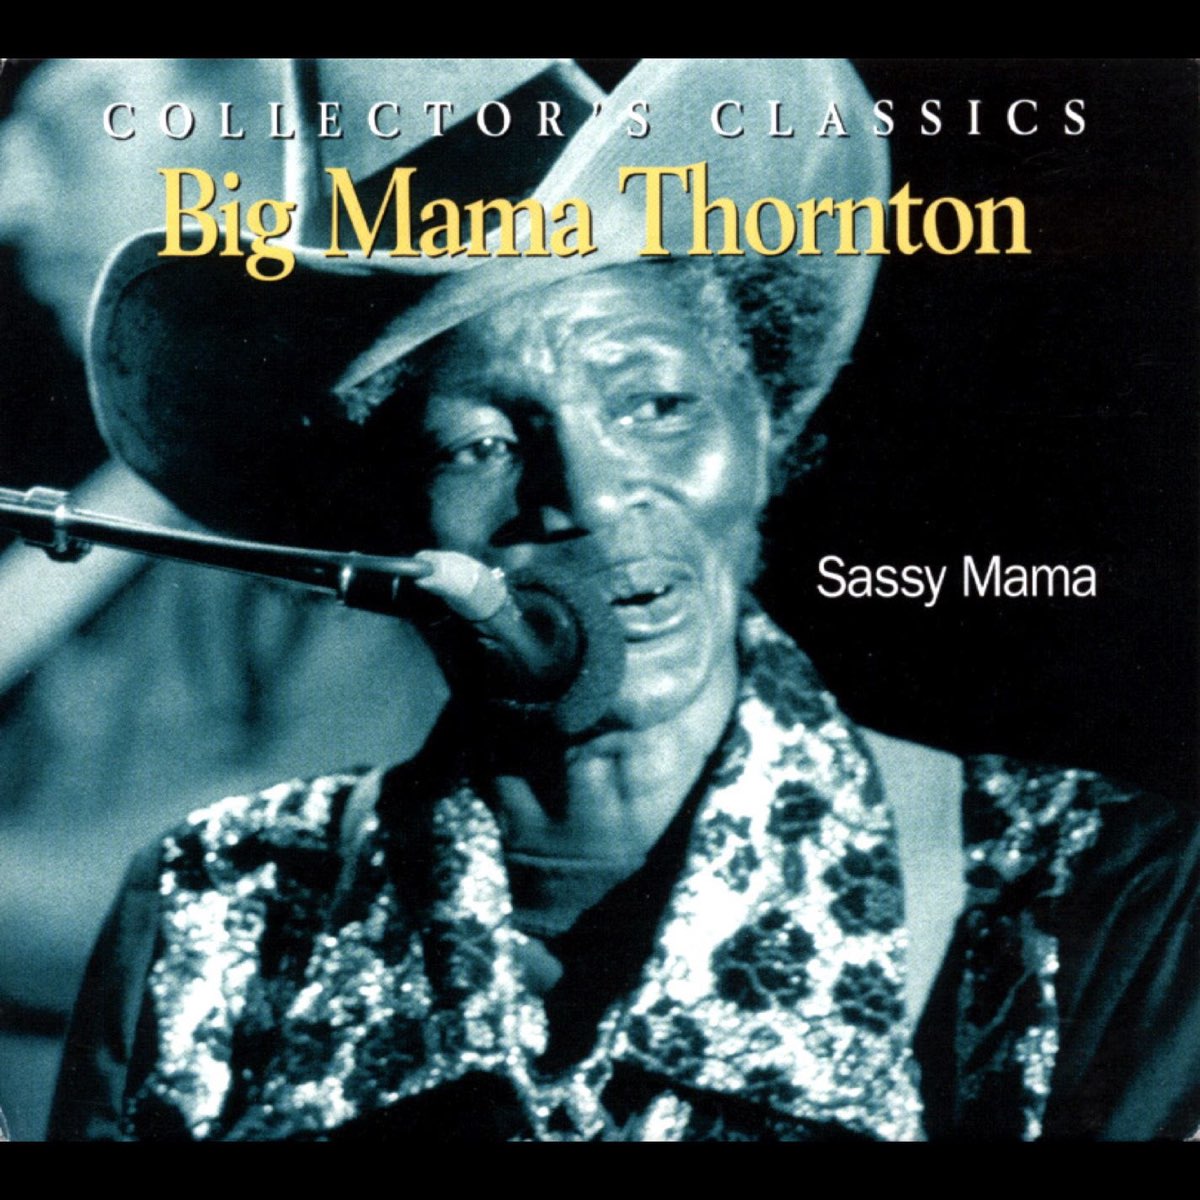 ビッグ ママ ソーントンの Sassy Mama をapple Musicで